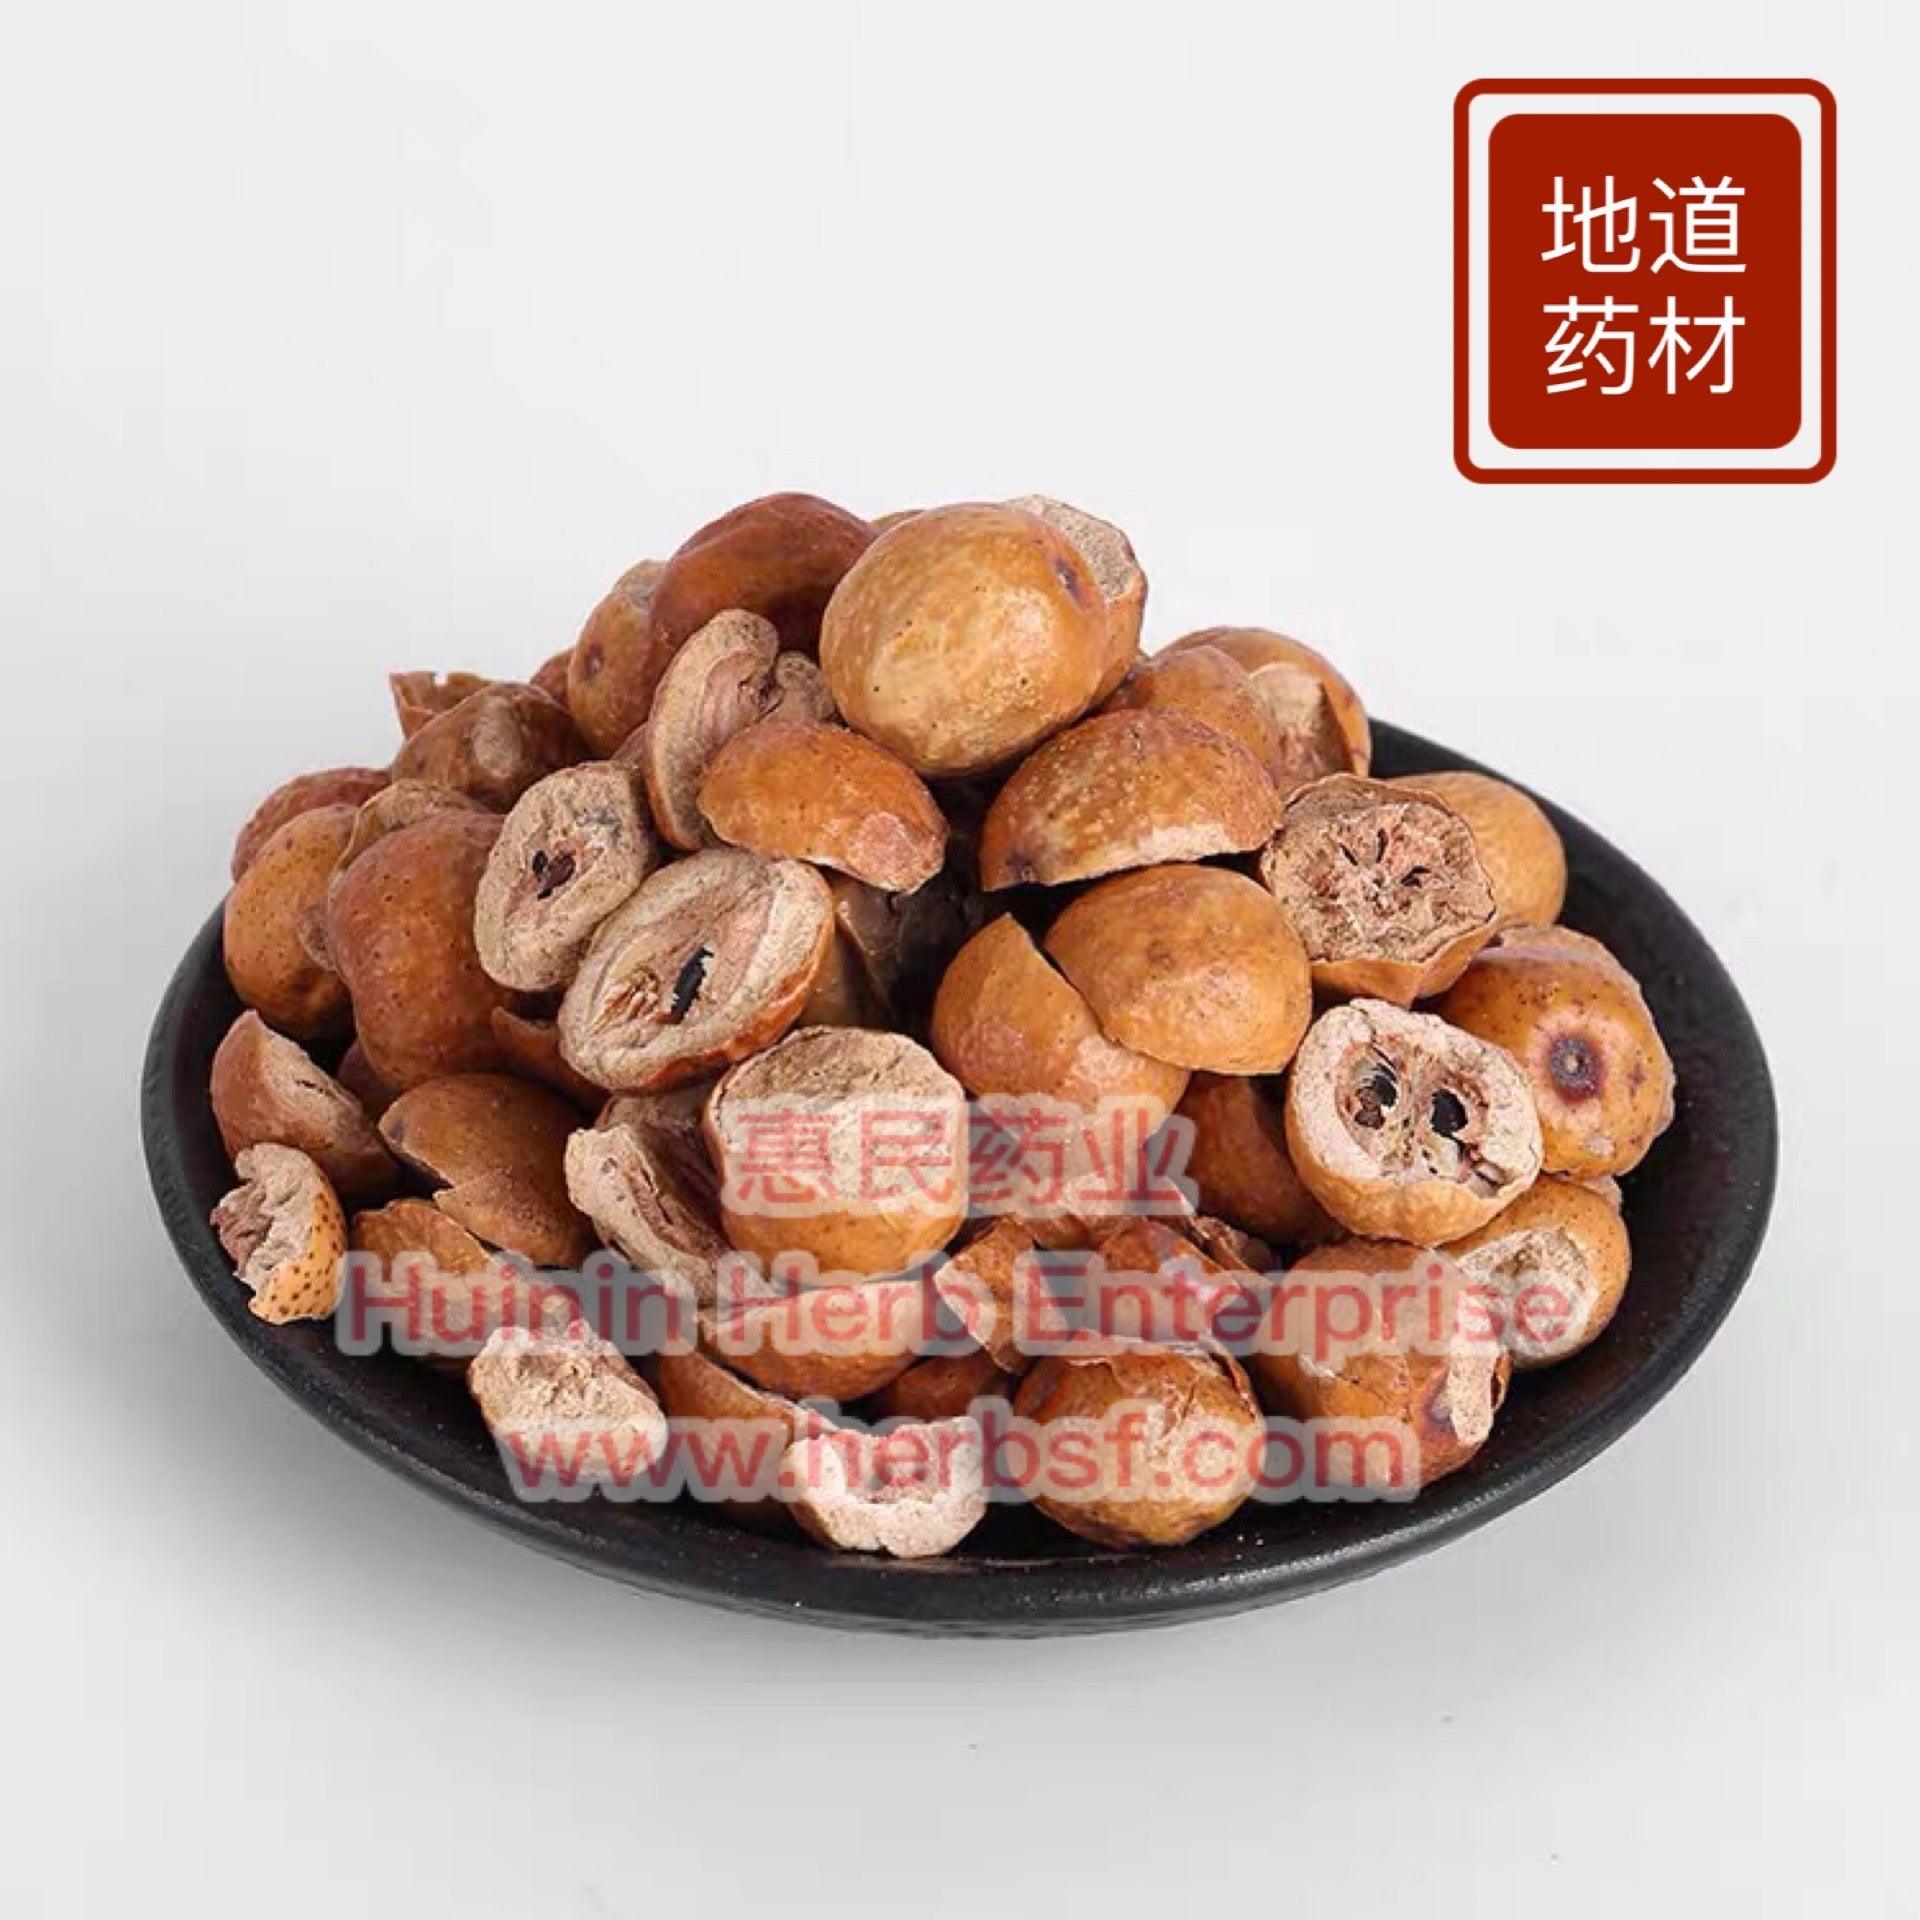 Chuan Lian Zi (Sichuan Chinaberry) 4oz - Huimin Herb Online, LLC